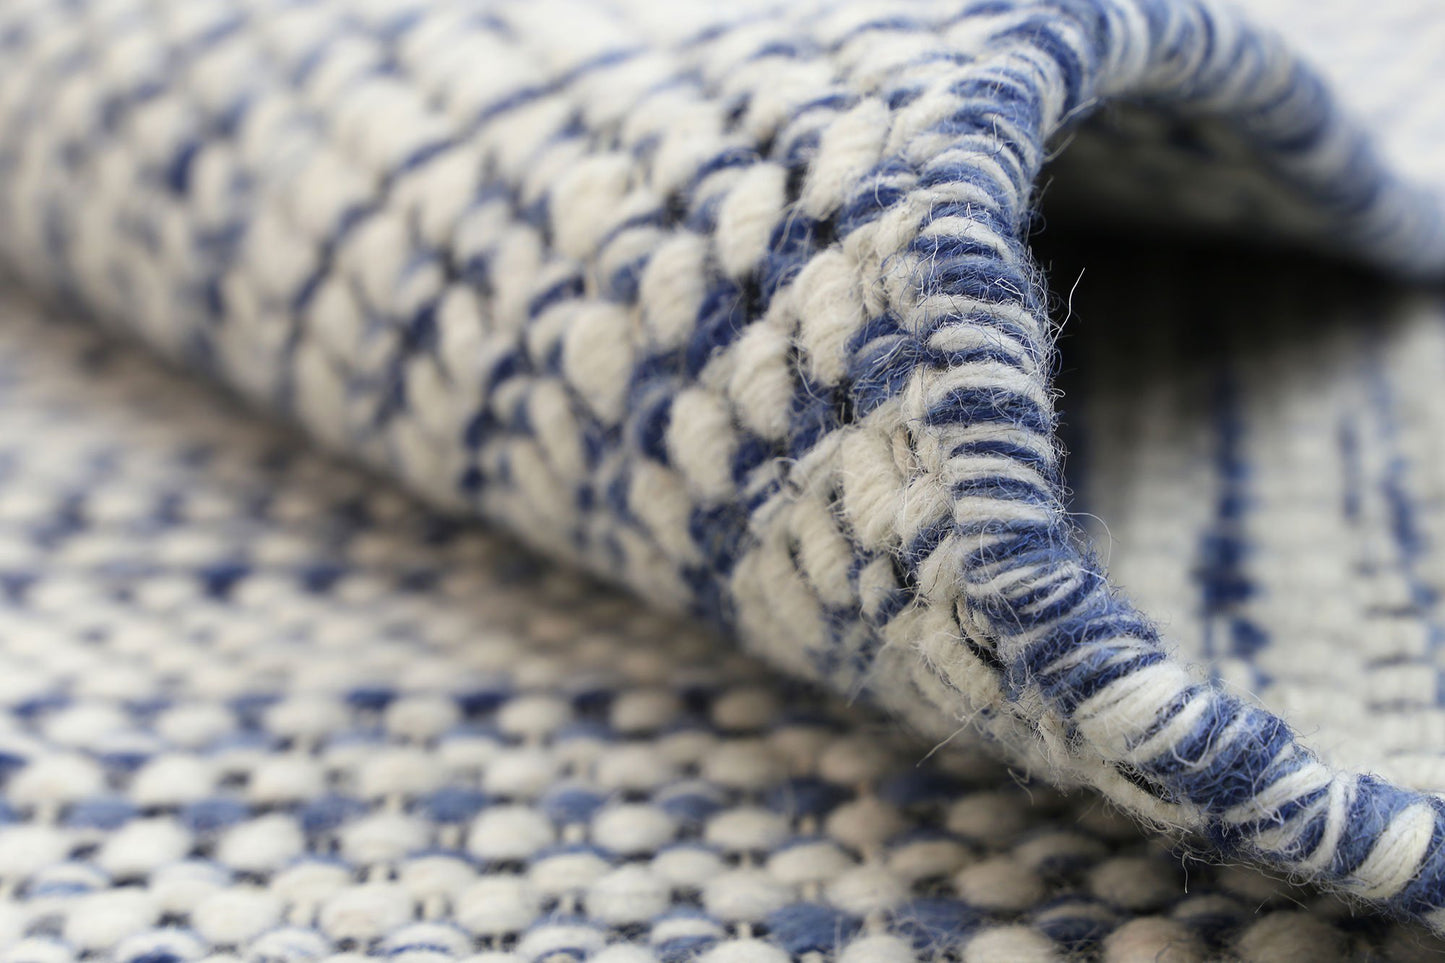 Nordic Blue Reversible Wool Rug